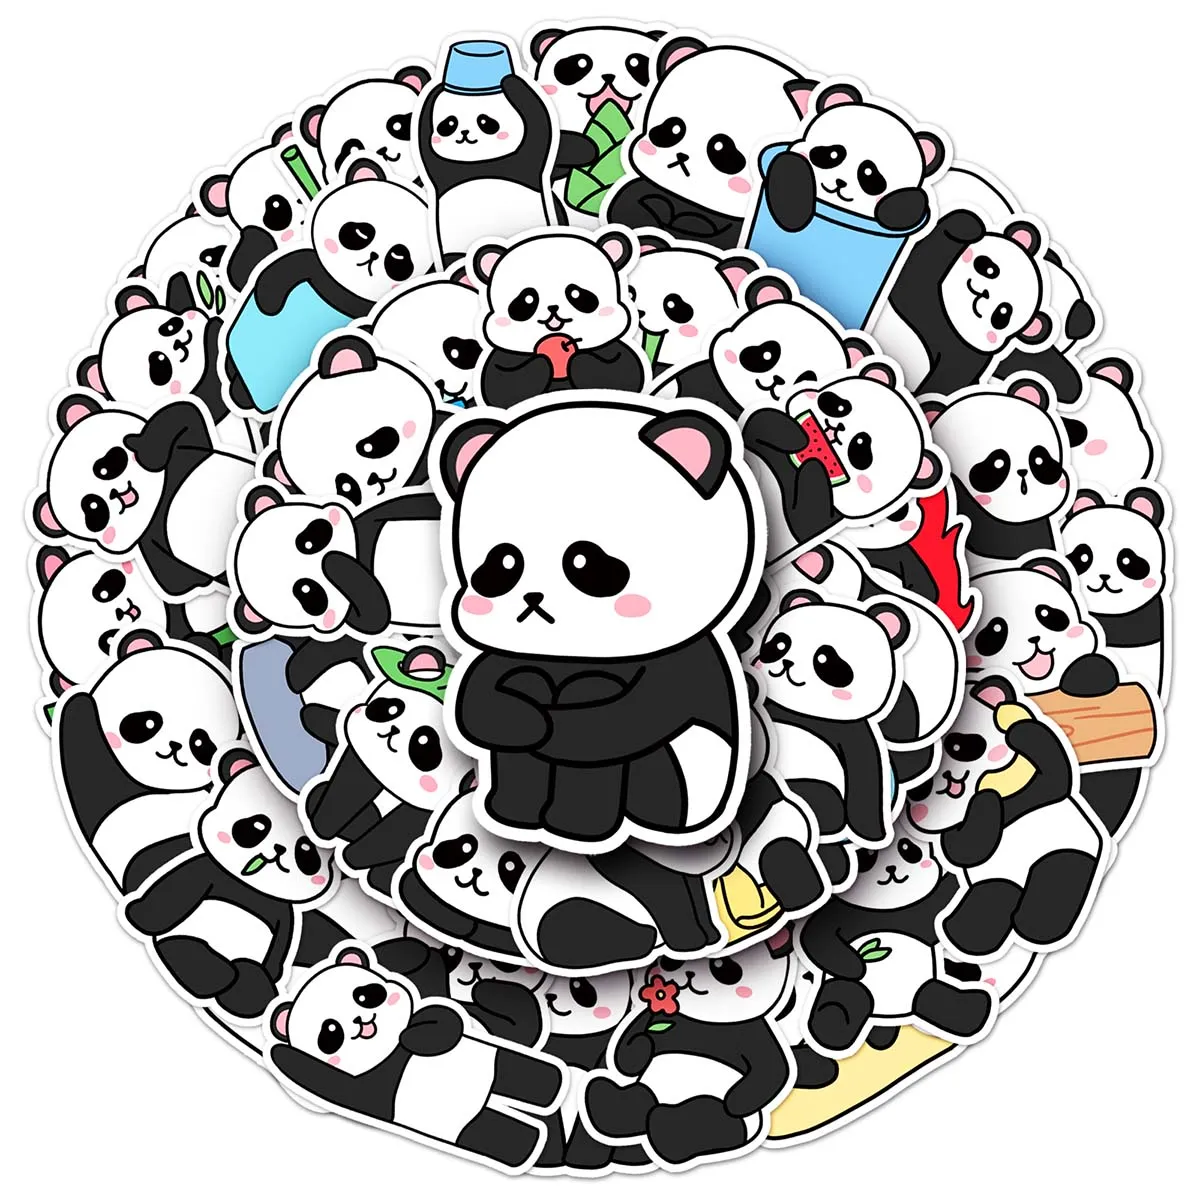 50 pcs cute cartoon panda animal creative stickers PVC skateboard diary diy car waterproof decoration